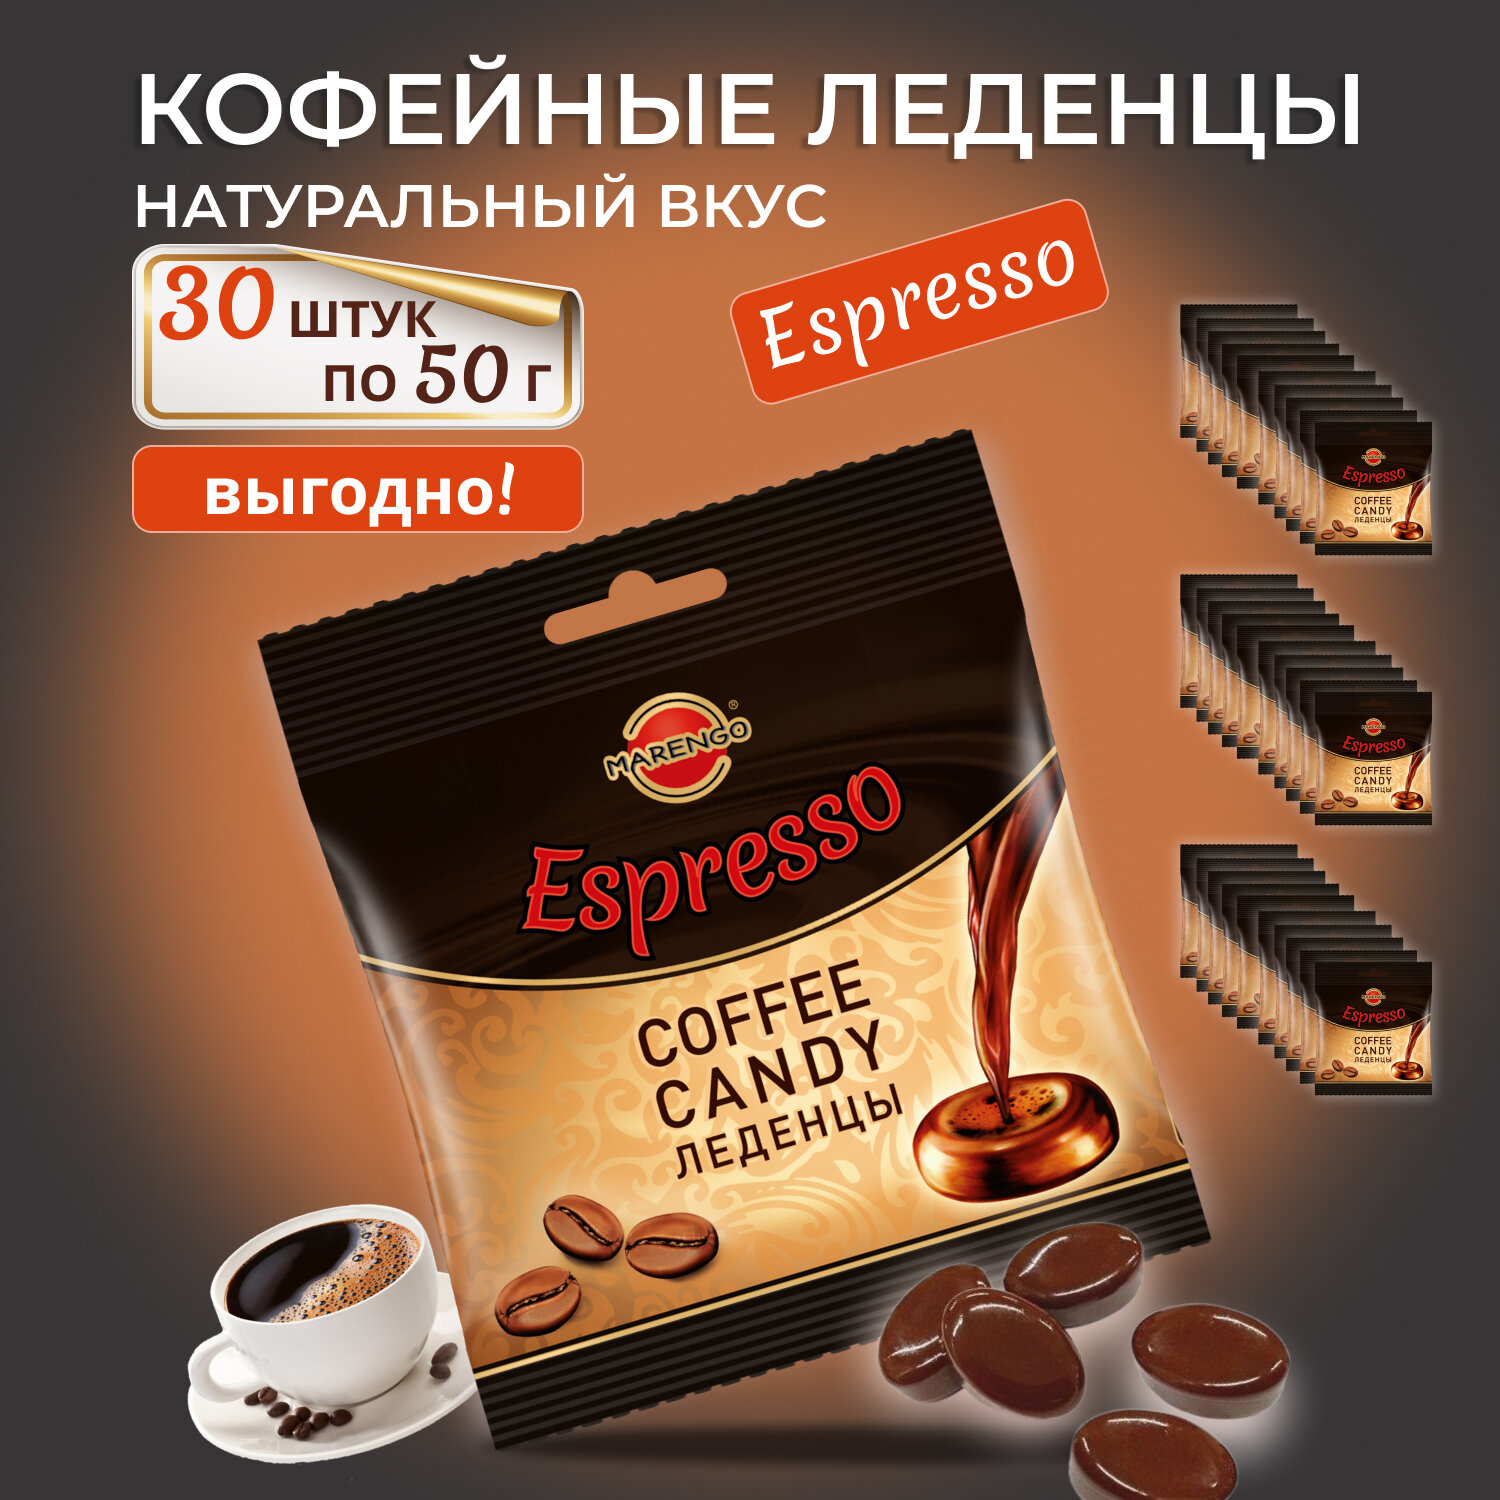 Карамель кофейная /MARENGO/ эспрессо, пакет, 30шт по 50г.